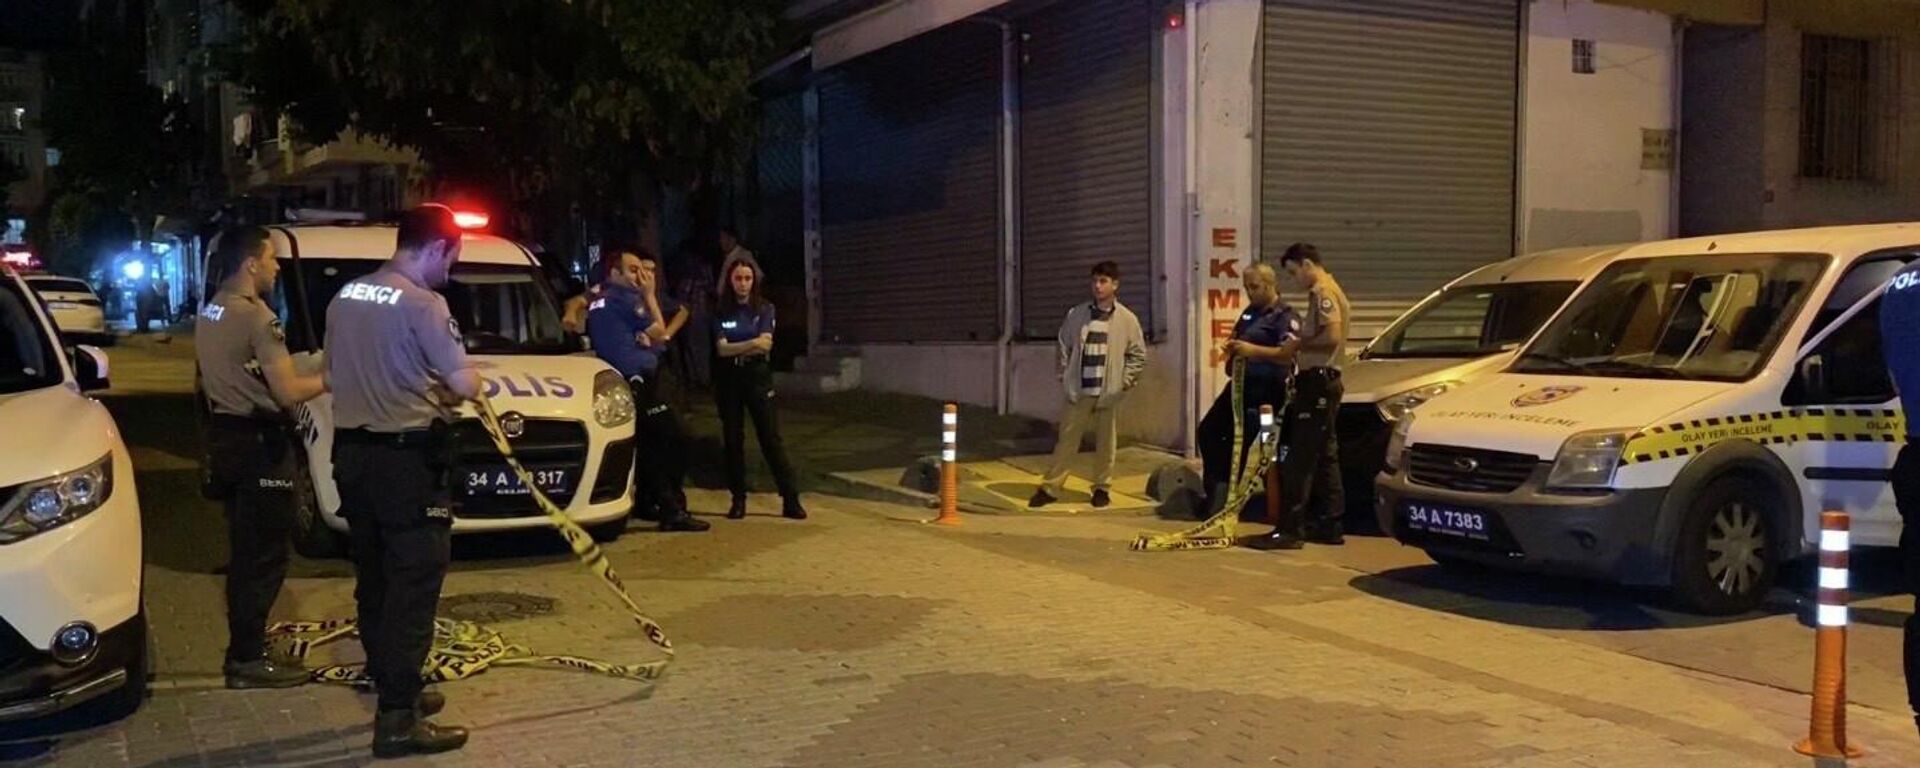 İstanbul'un Bağcılar ilçesinde maskeli bir grup, sokakta 3 kişiye ateş açtı. Olayda 3 kişi yaralanırken yoldaki araçlar da zarar gördü. - Sputnik Türkiye, 1920, 17.07.2022